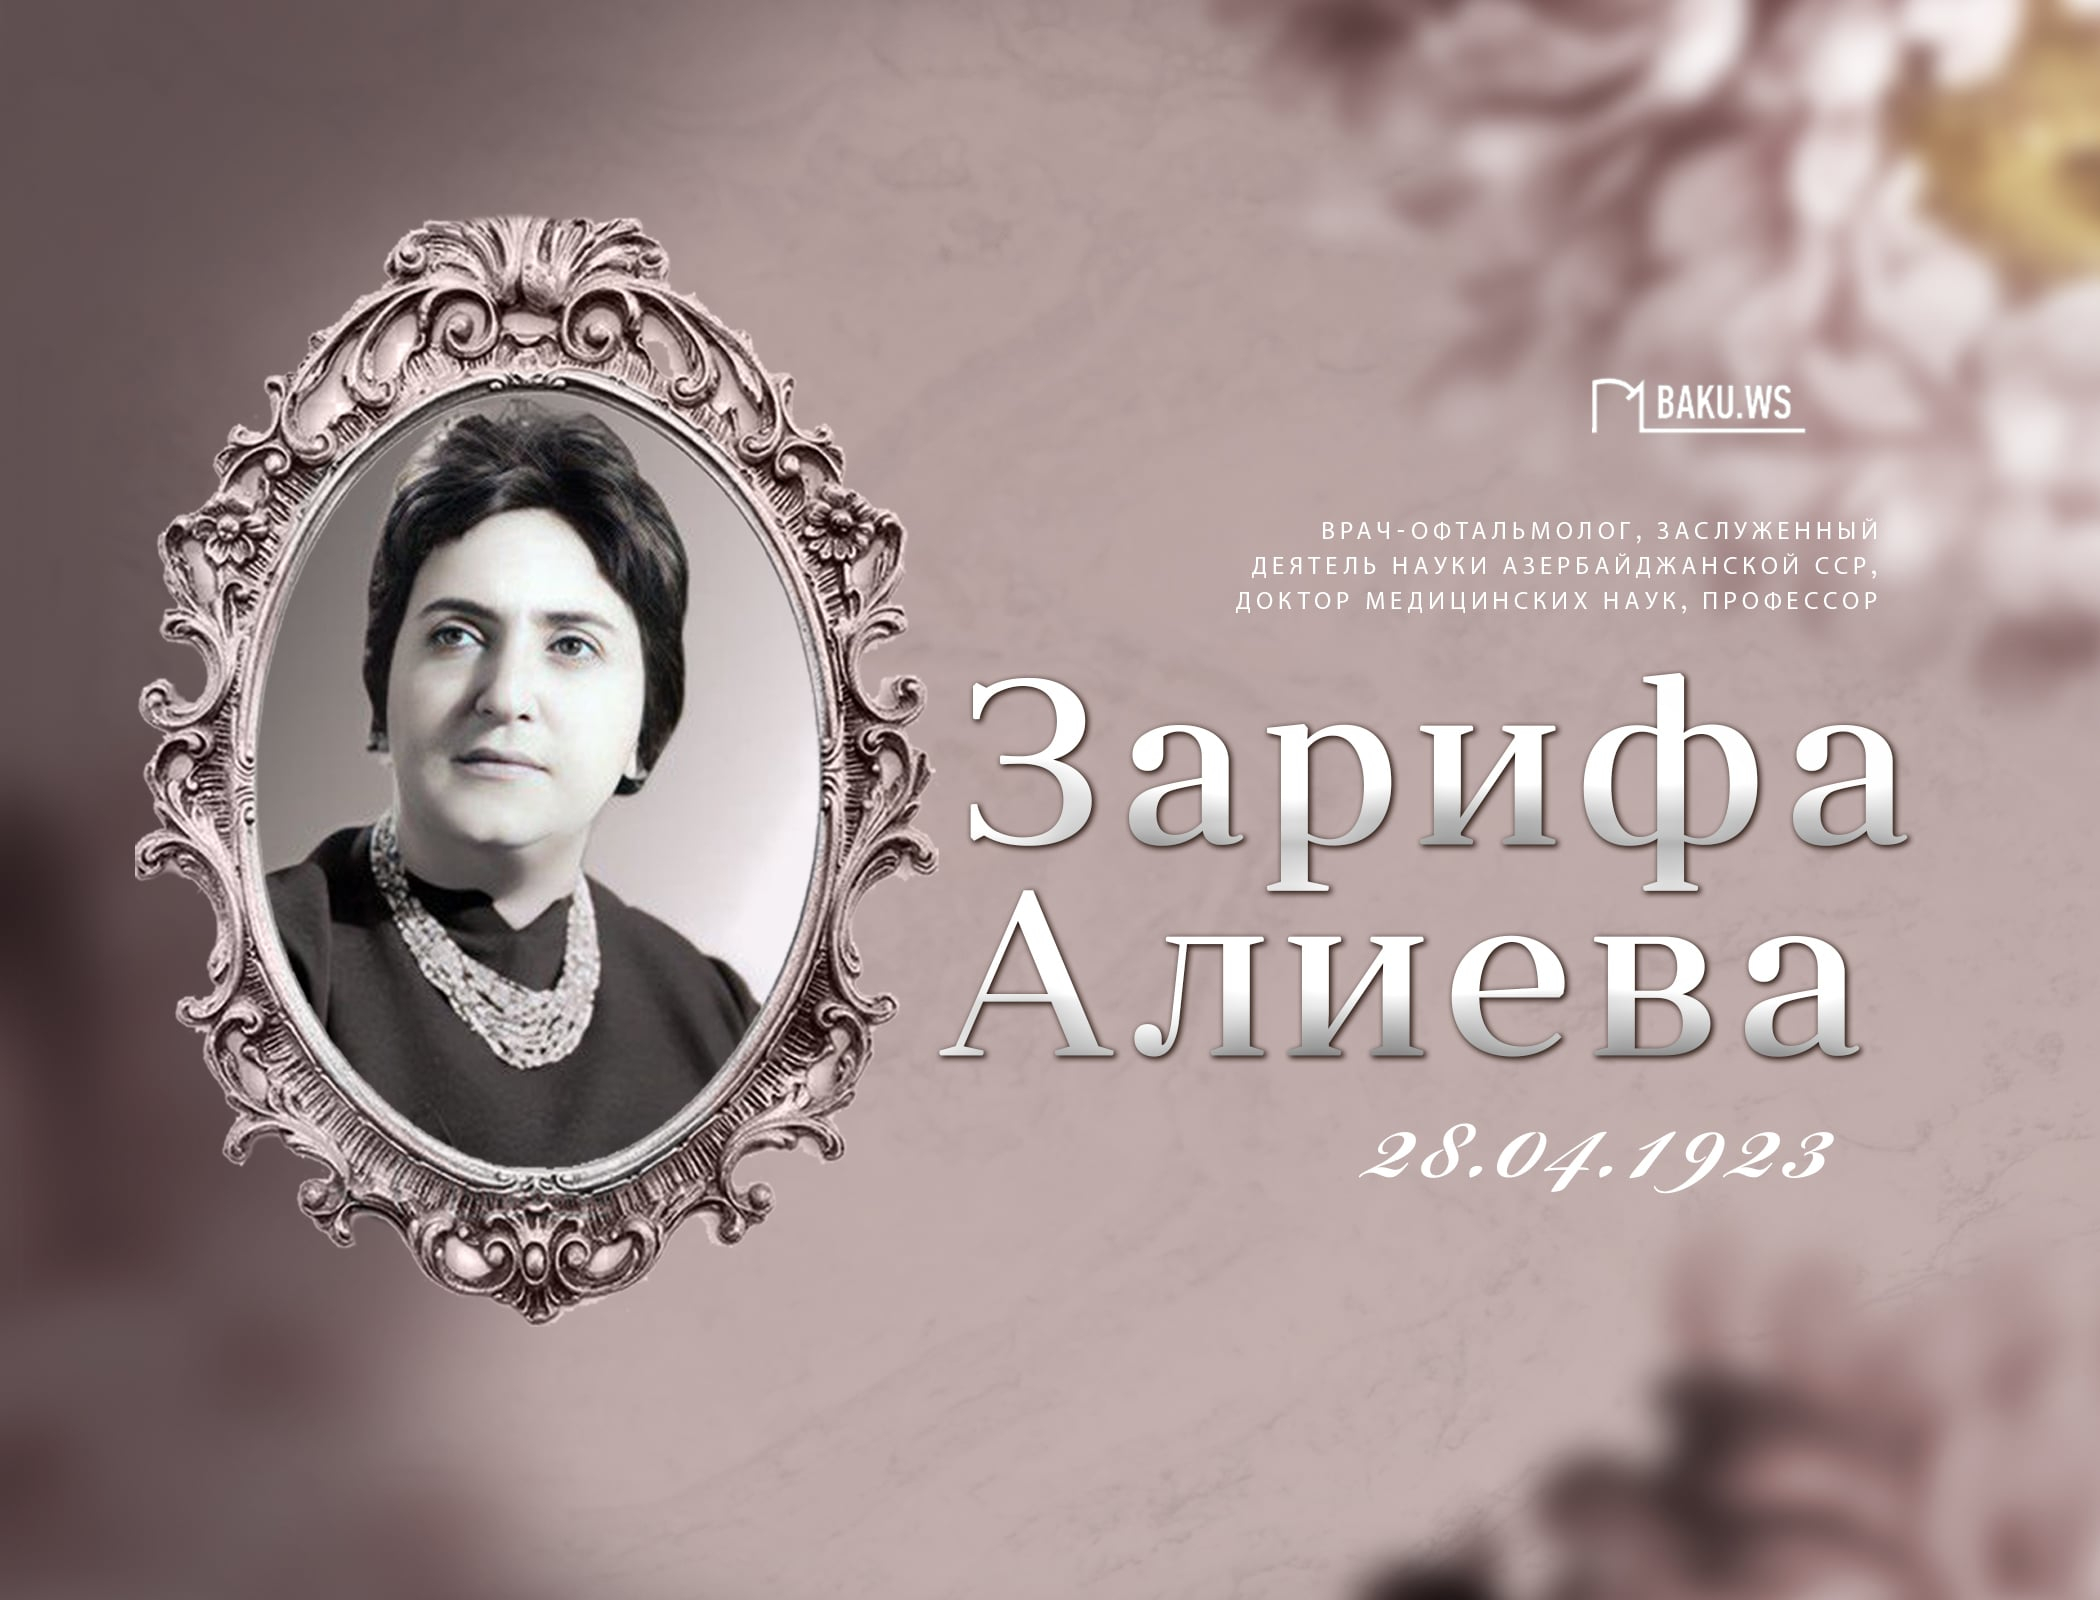 Сегодня день рождения академика Зарифы Алиевой